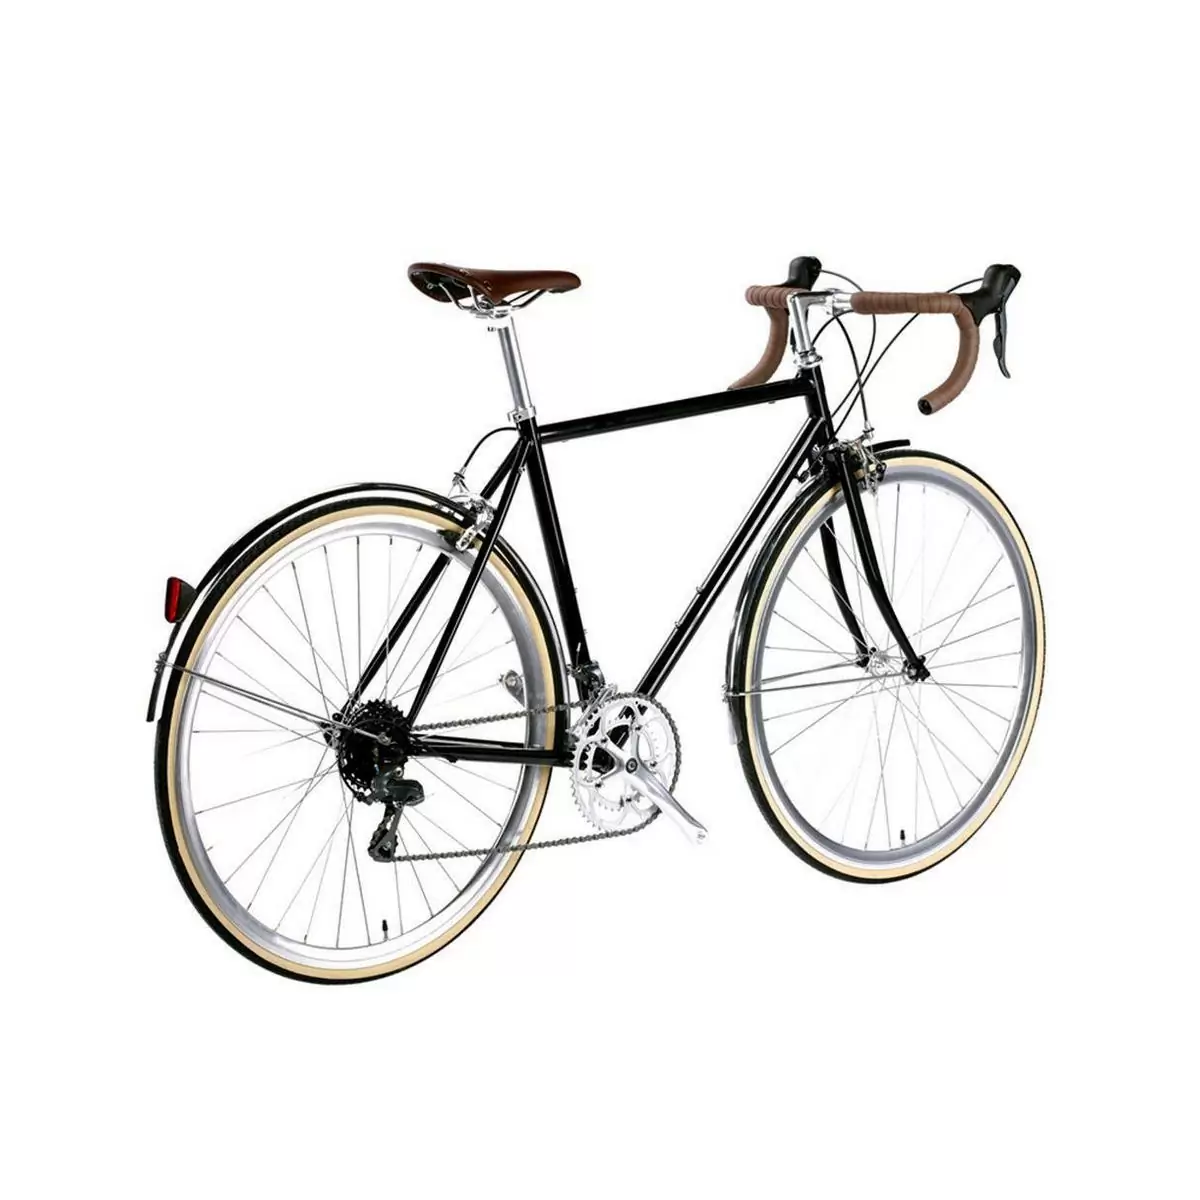 Bicicleta urbana TROY 16v Del Rey negra grande 58cm #2